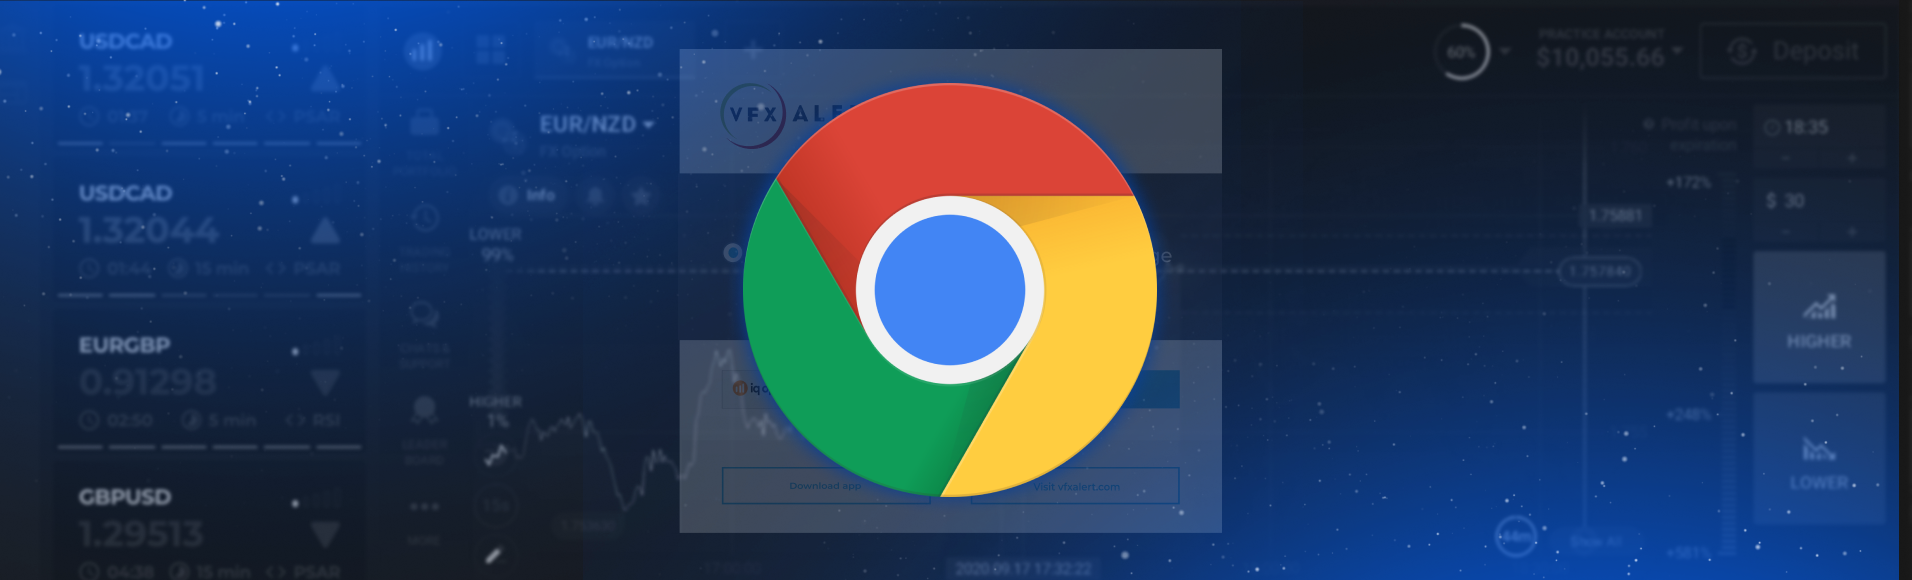 Sinyal vfxAlert di browser Chrome